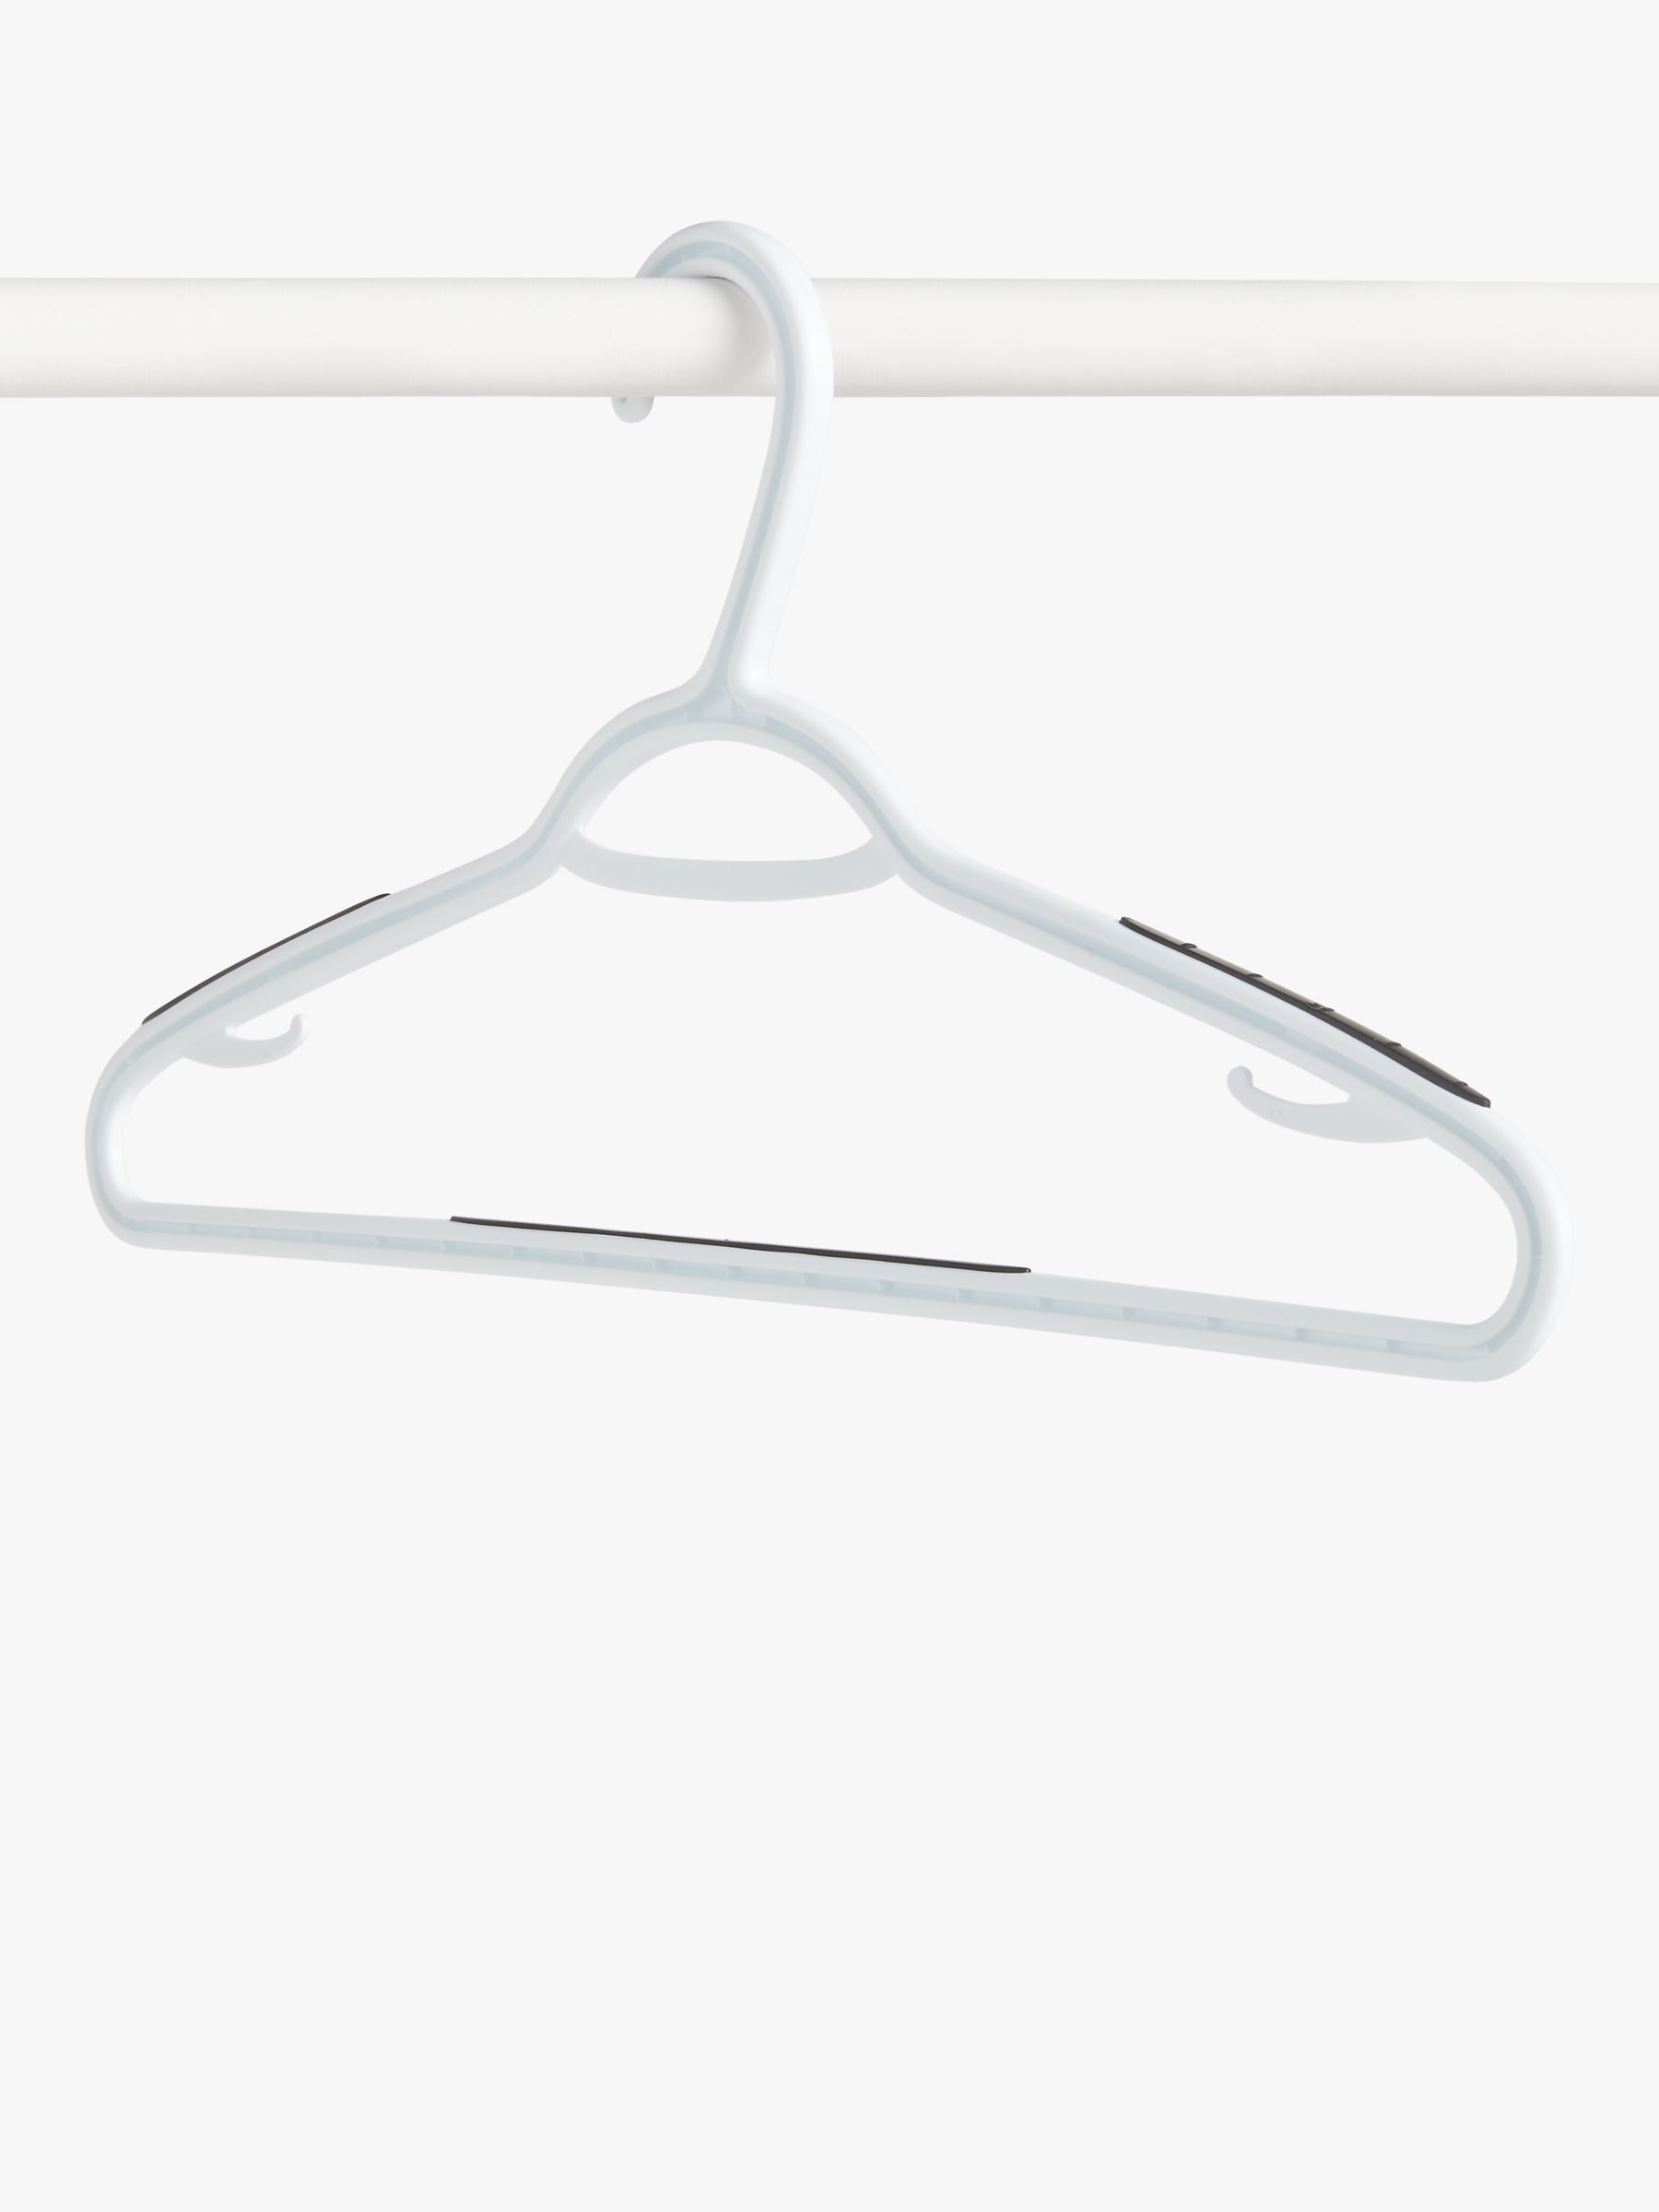 John Lewis Plastic Hangers, Pack of 10, White